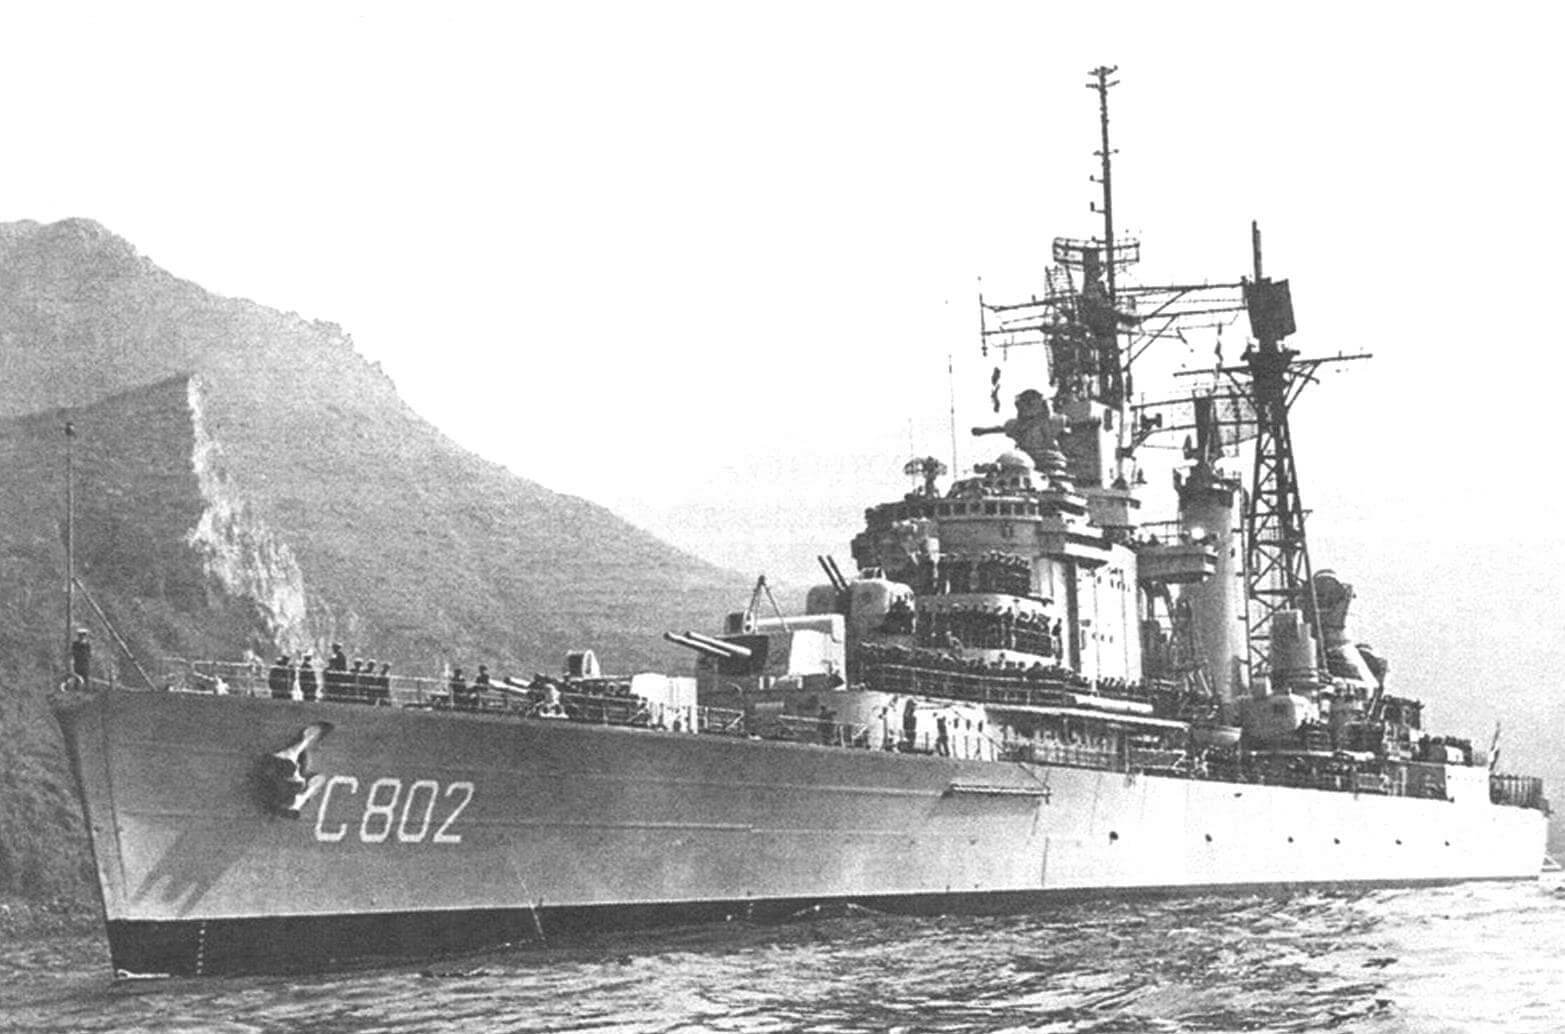 Один из «наследников славного имени» - крейсер С802 «Де Зевен Провинене»» (1966 год)